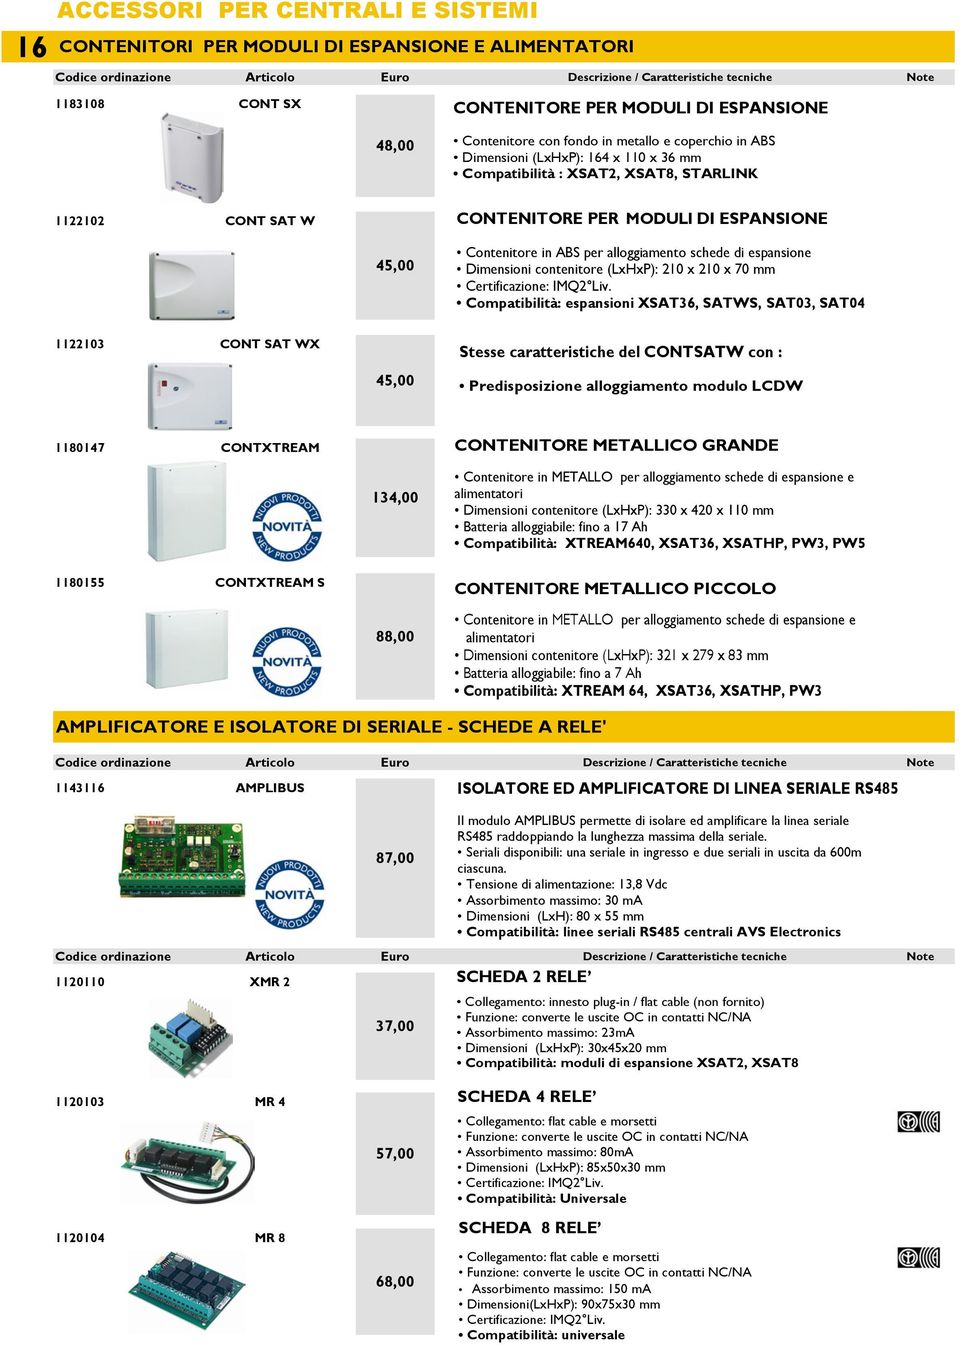 Dimensioni contenitore (LxHxP): 210 x 210 x 70 mm Certificazione: IMQ2 Liv.